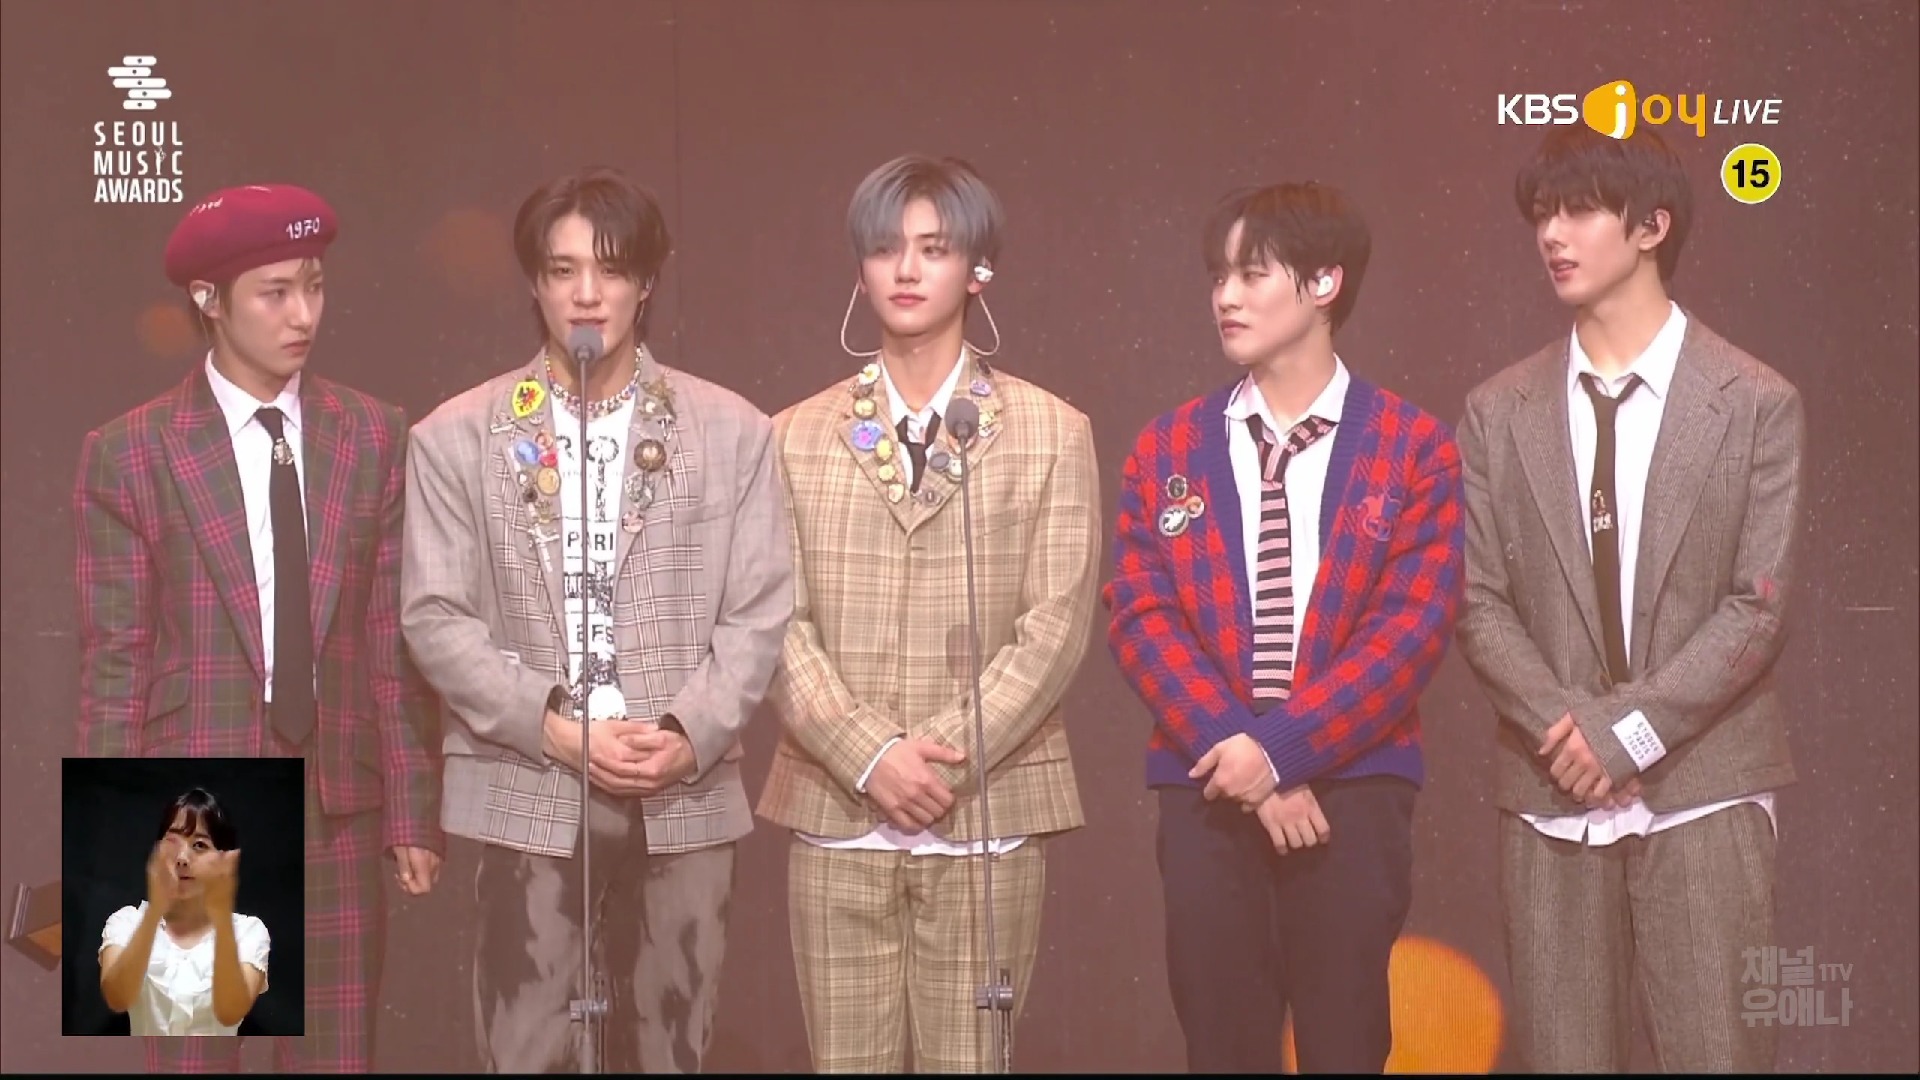 Seoul Music Award: BTS - IVE tiếp tục giành giải quan trọng nhưng trùm cuối đạt Daesang mới gây sốc! - Ảnh 1.